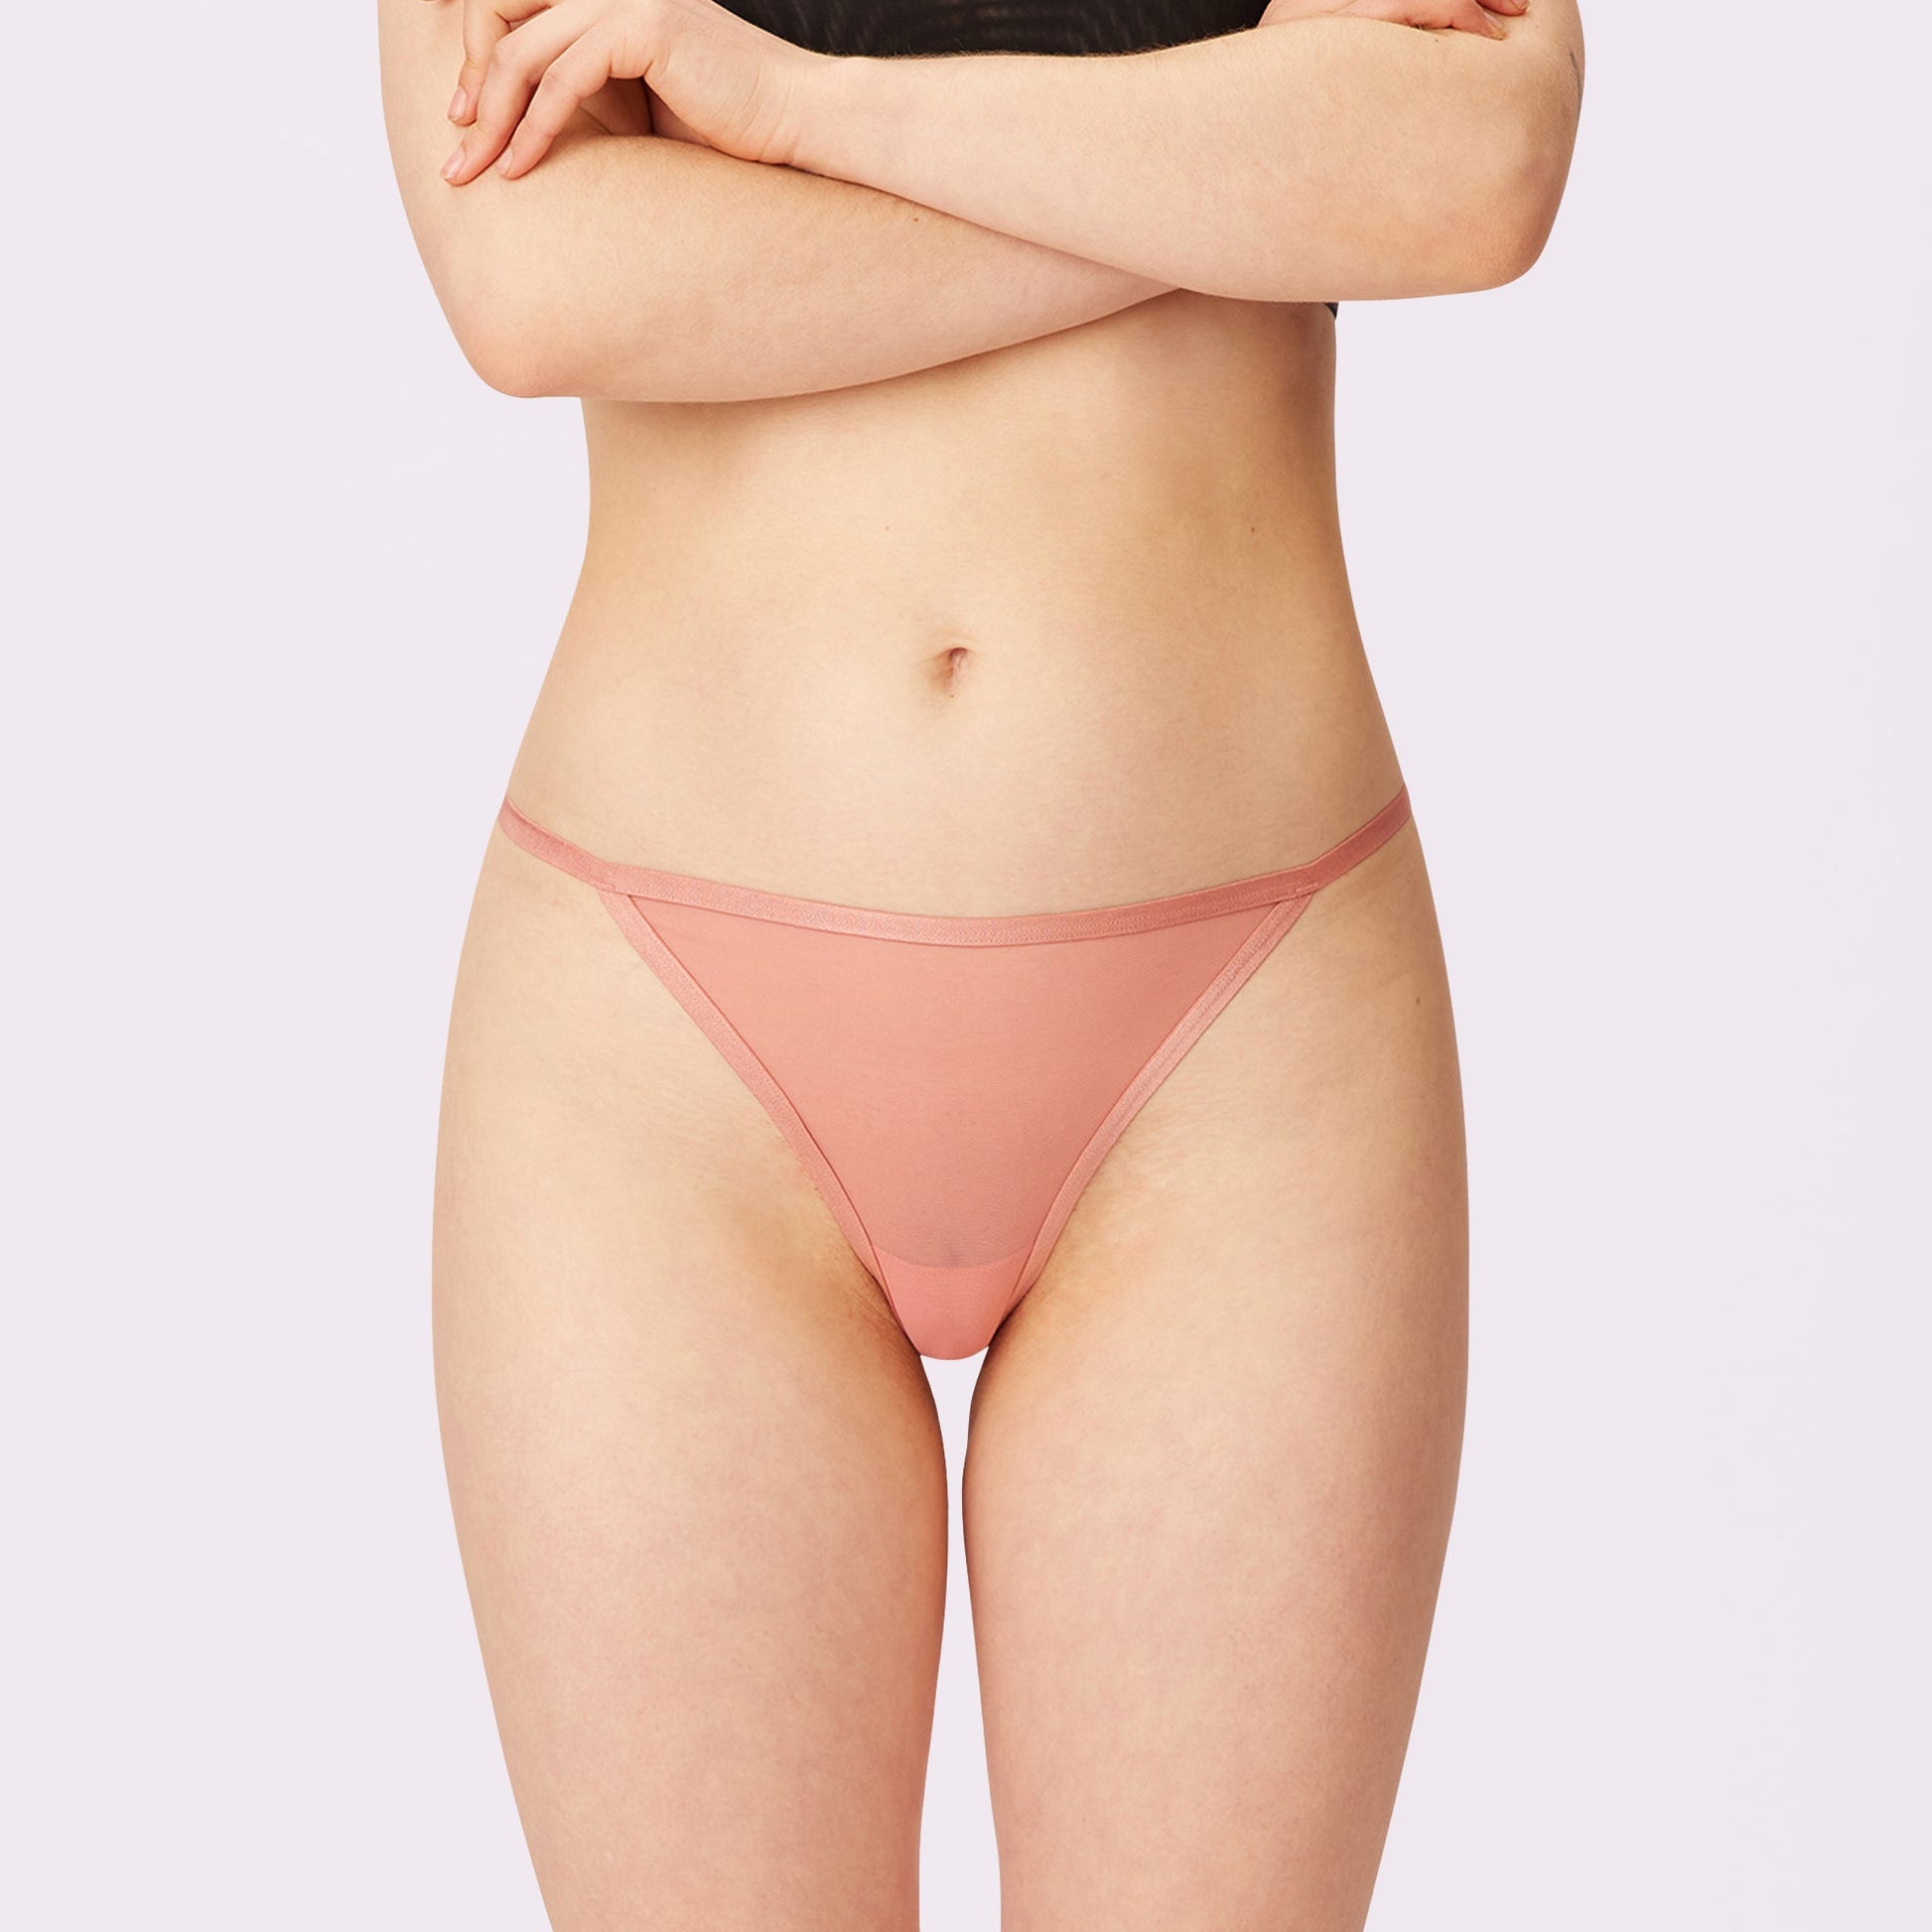 Pink, Women's Thong Panties